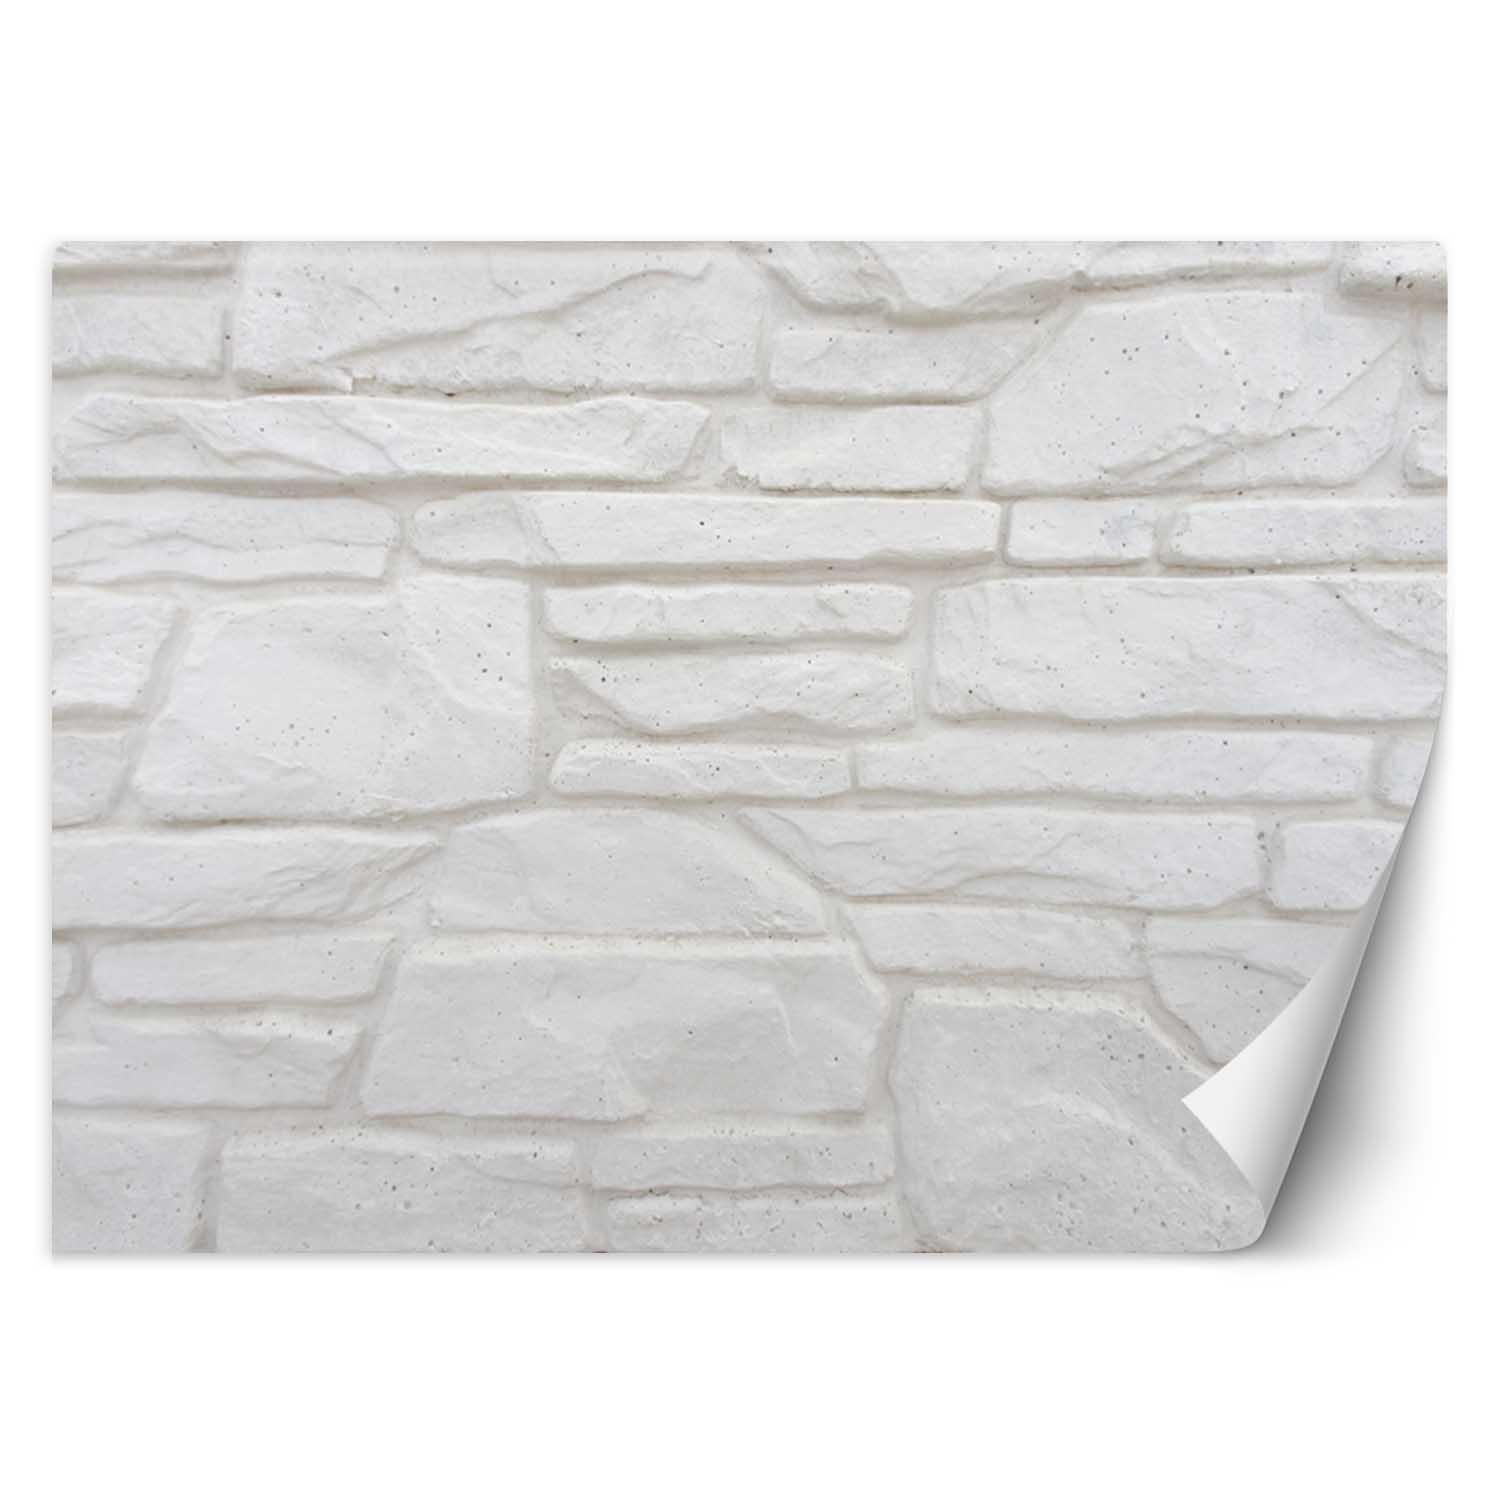 Trend24 – Behang – Witte Stenen Muur – Vliesbehang – Behang Woonkamer – Fotobehang – 450x315x2 cm – Incl. behanglijm